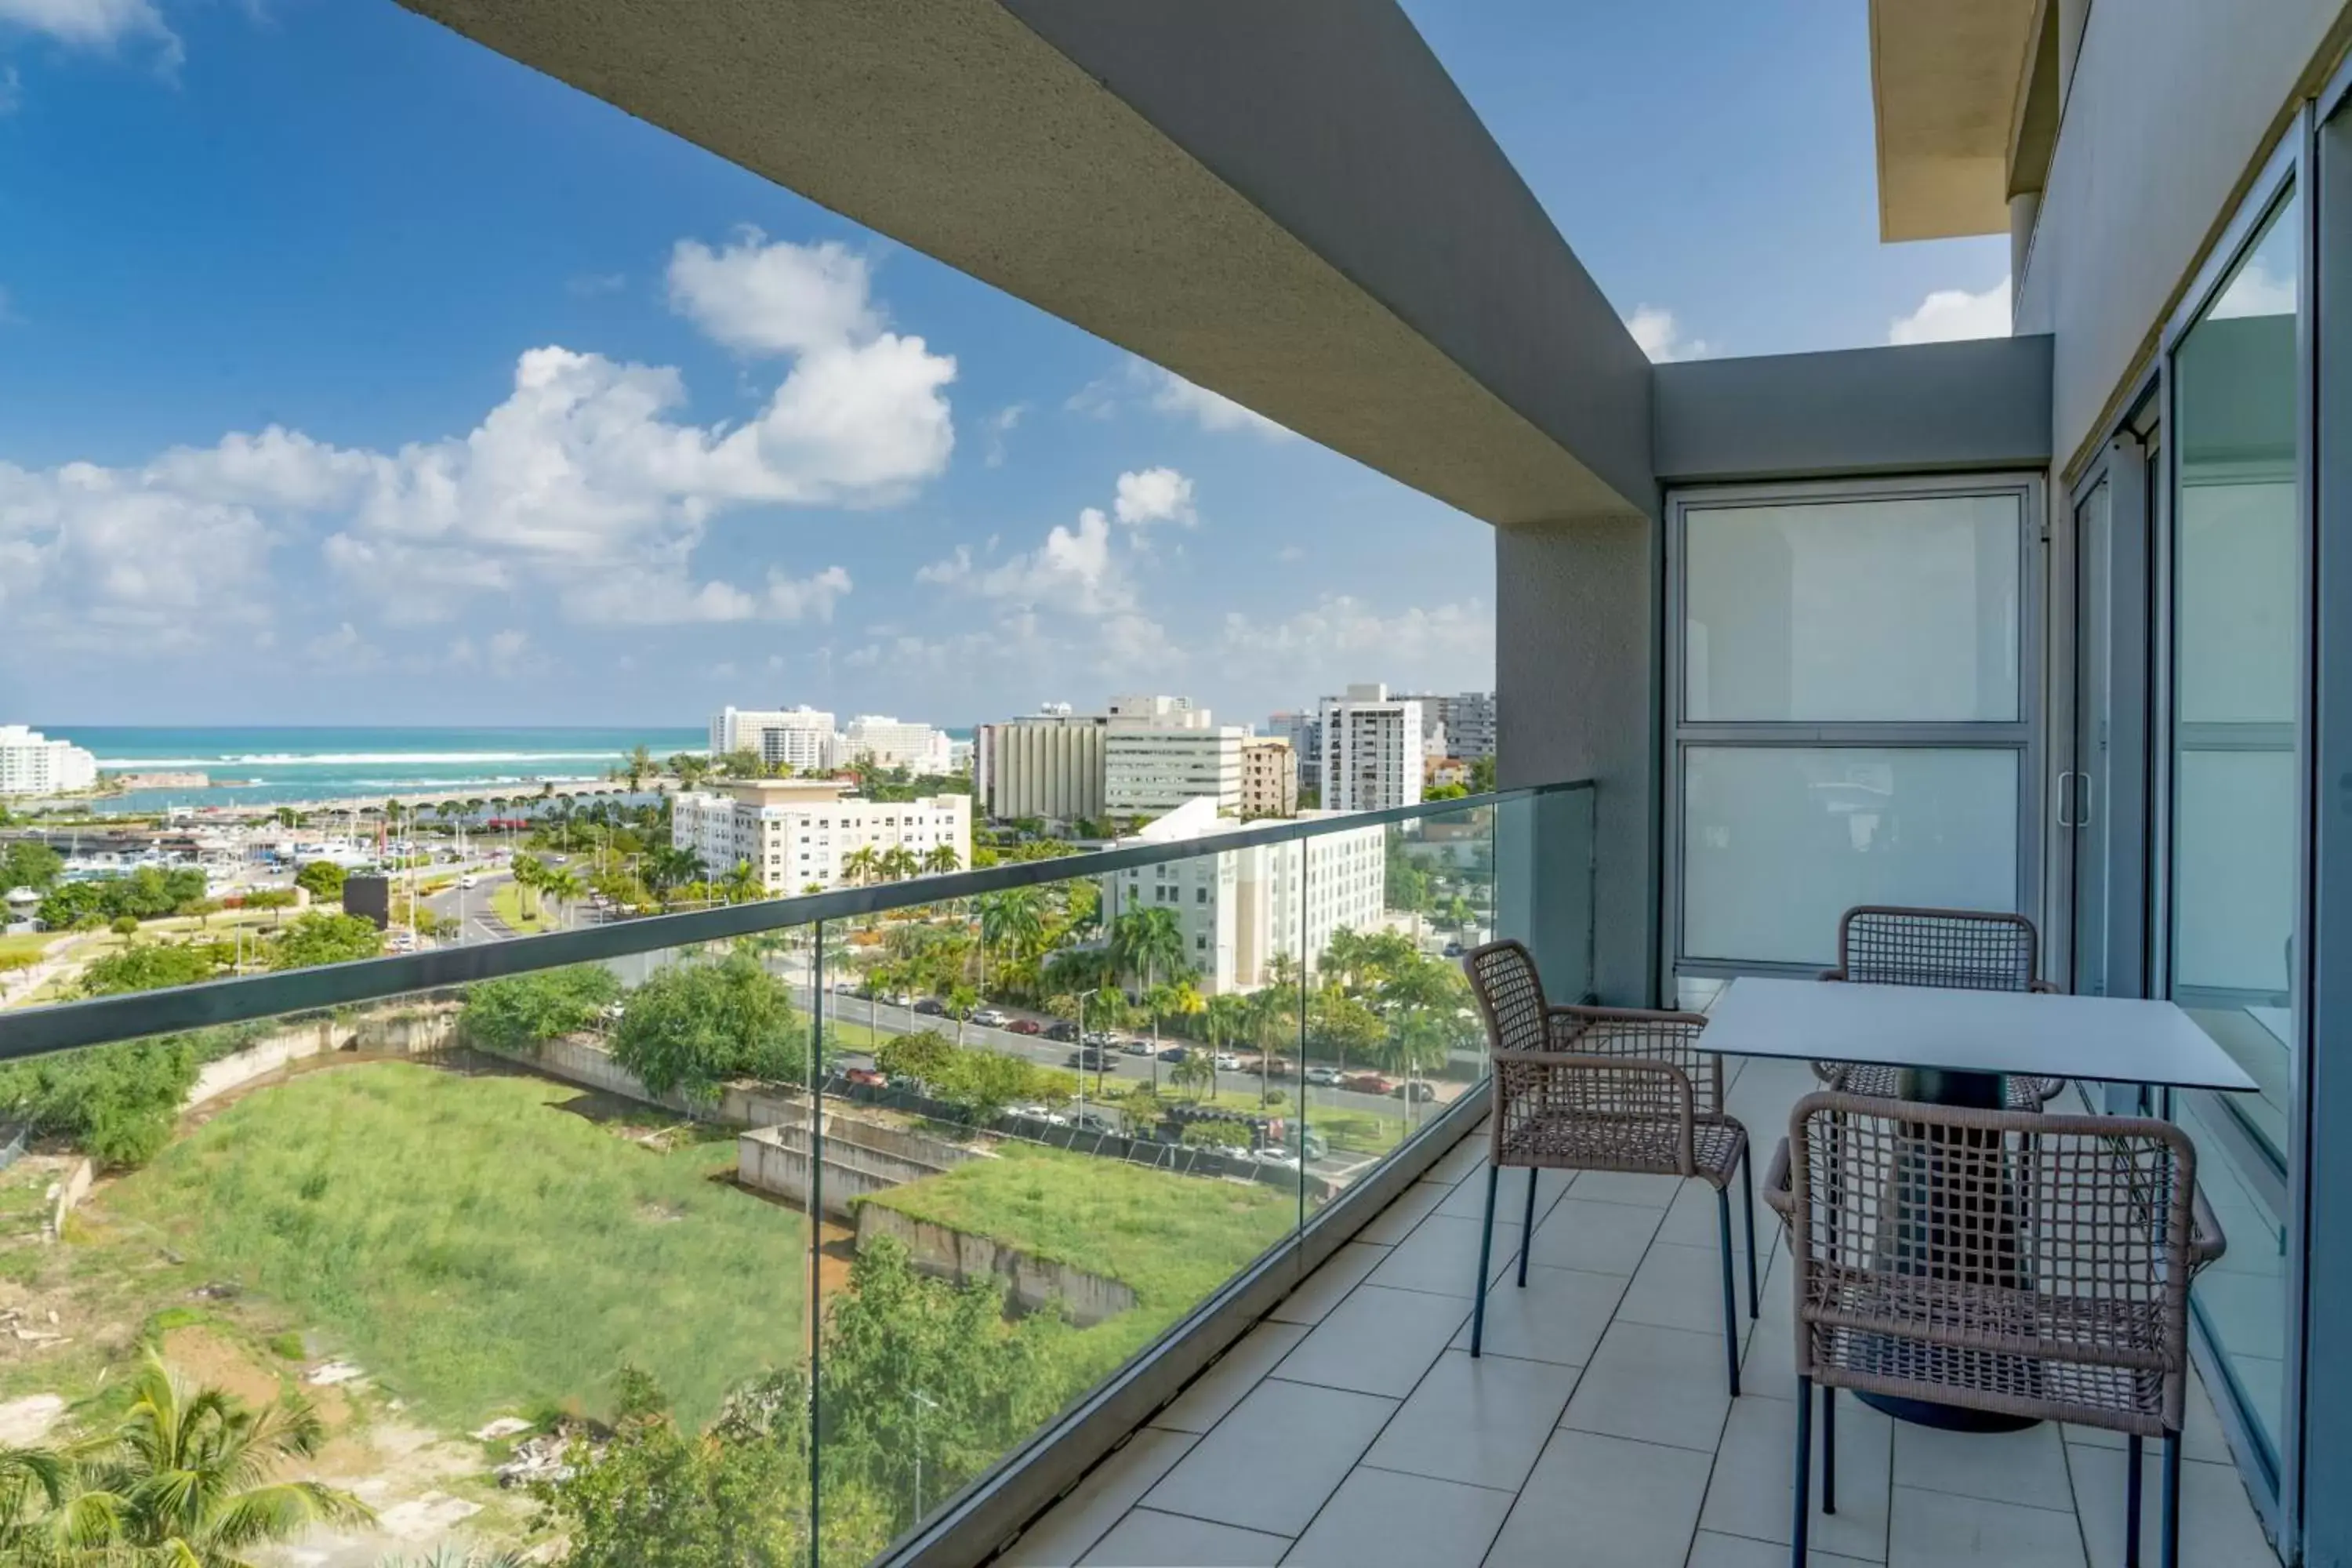 Photo of the whole room, Balcony/Terrace in Sheraton Puerto Rico Resort & Casino